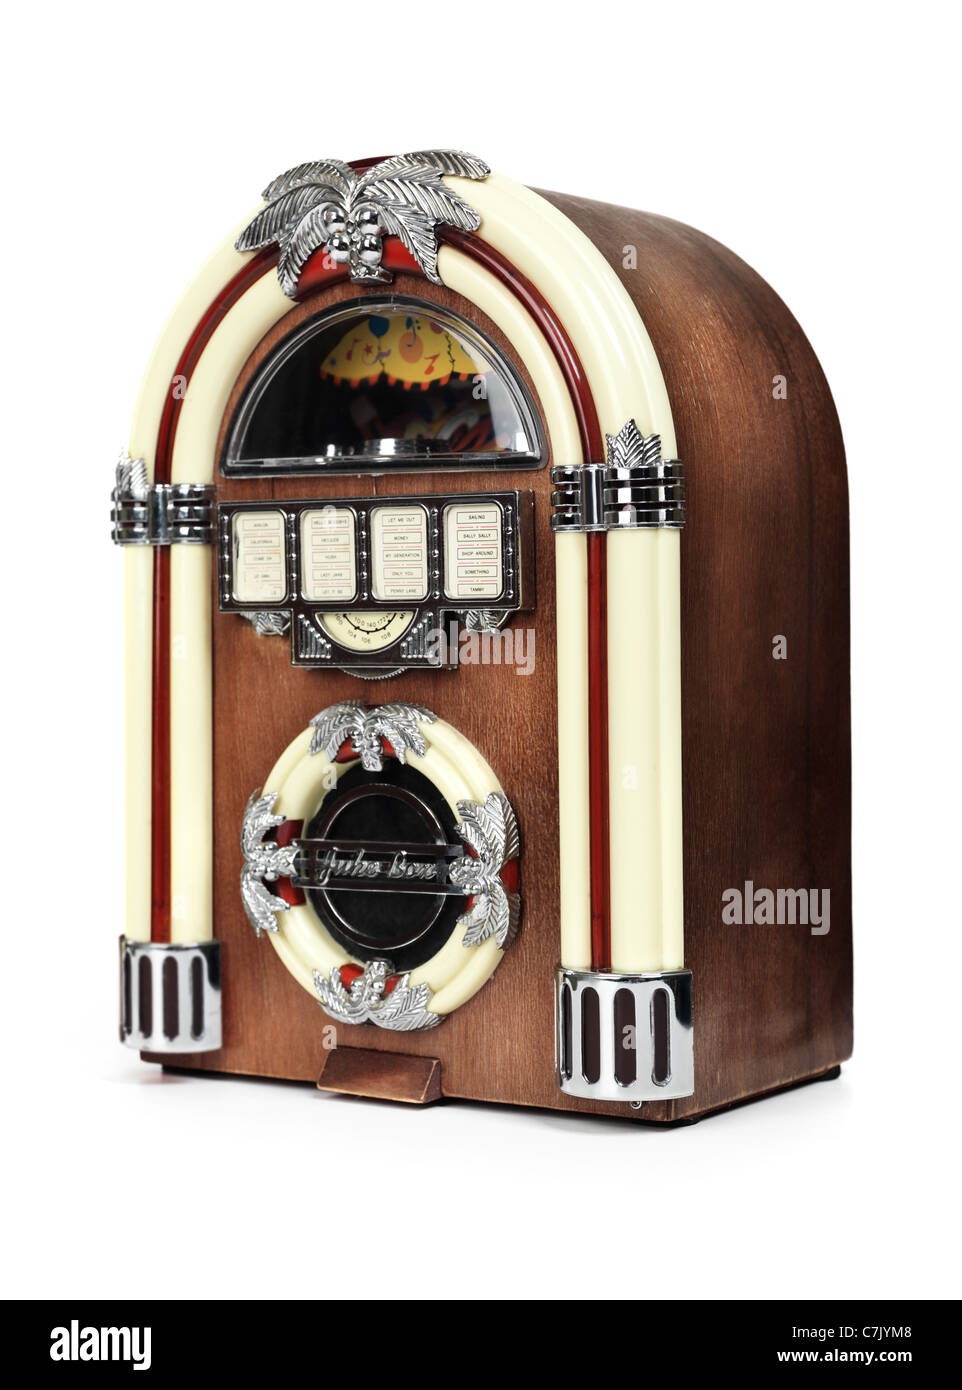 Retro juke box radio isolated on white background Stock Photo